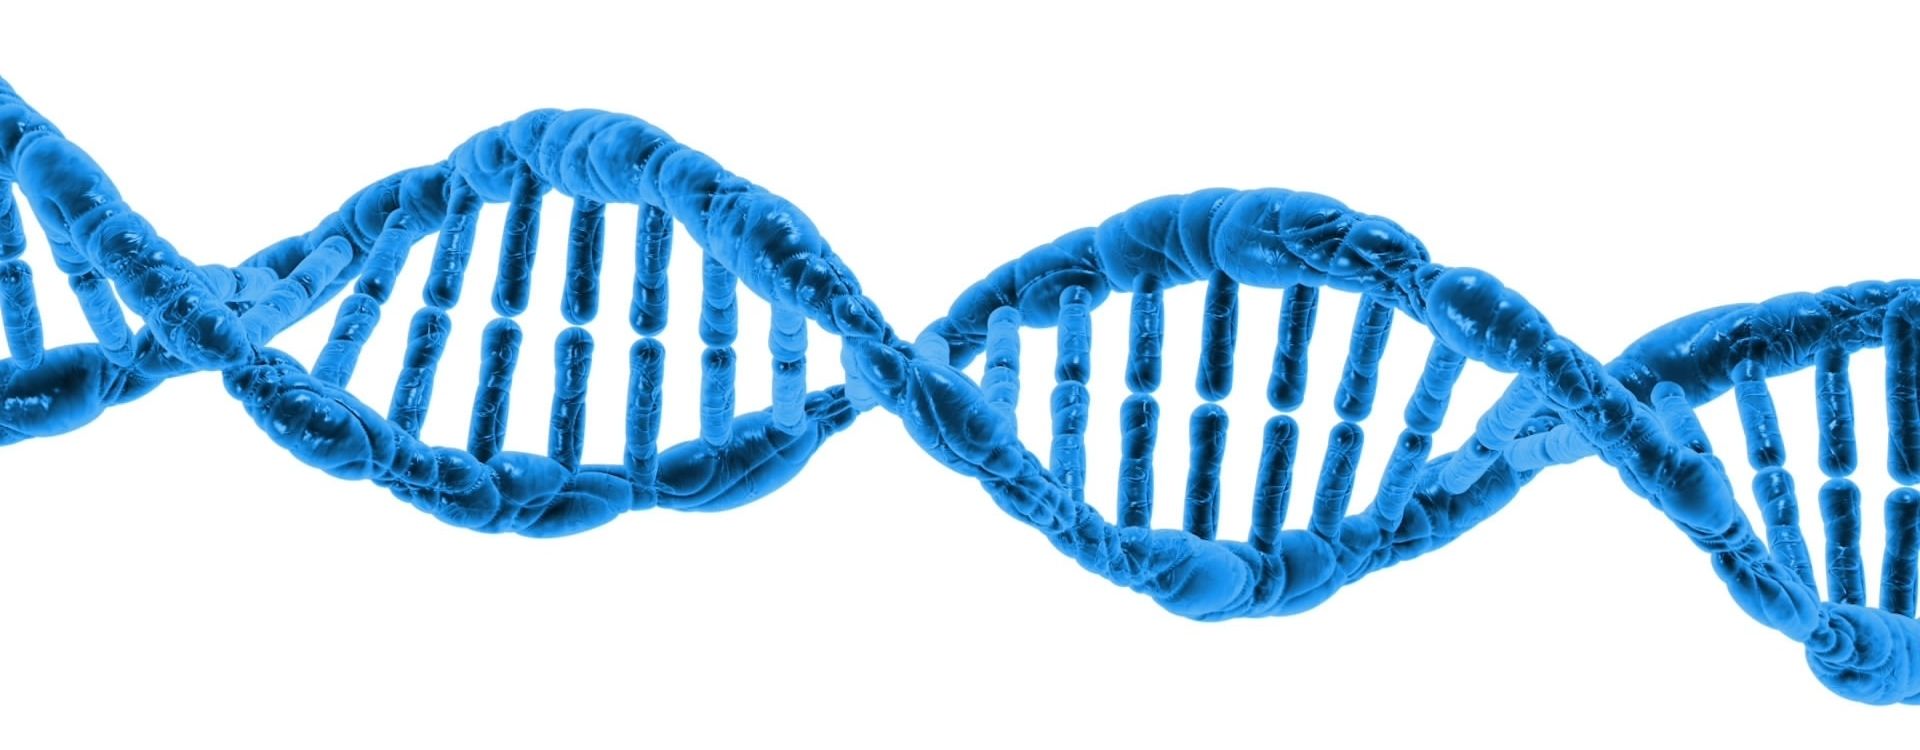 Blue-DNA-strand-on-white